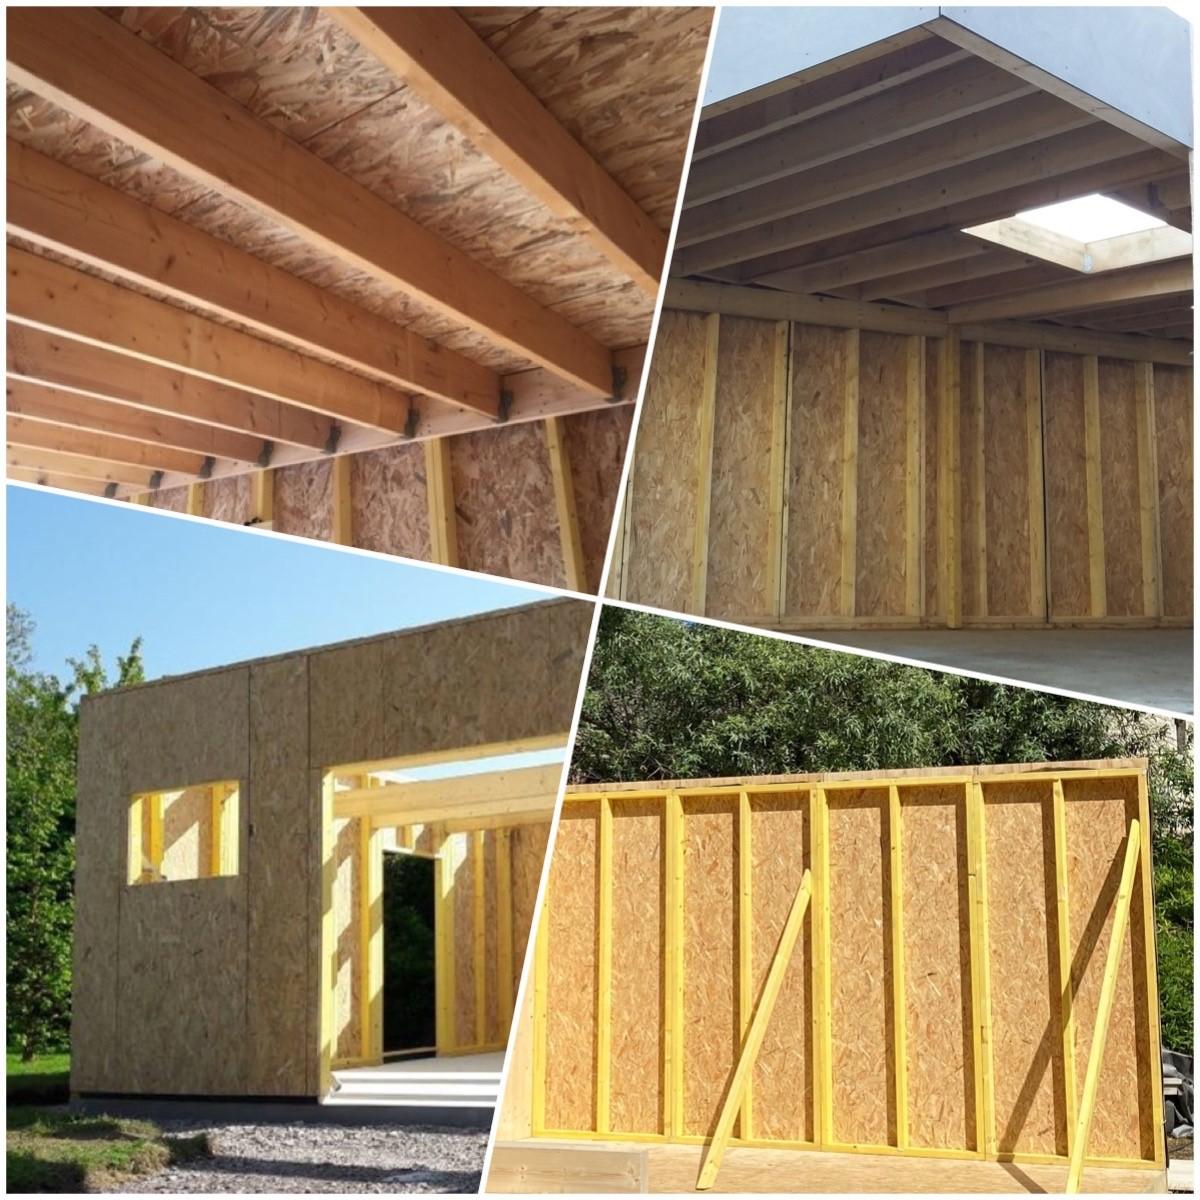 6_garage_ossature_bois_intérieur_caisson_construction